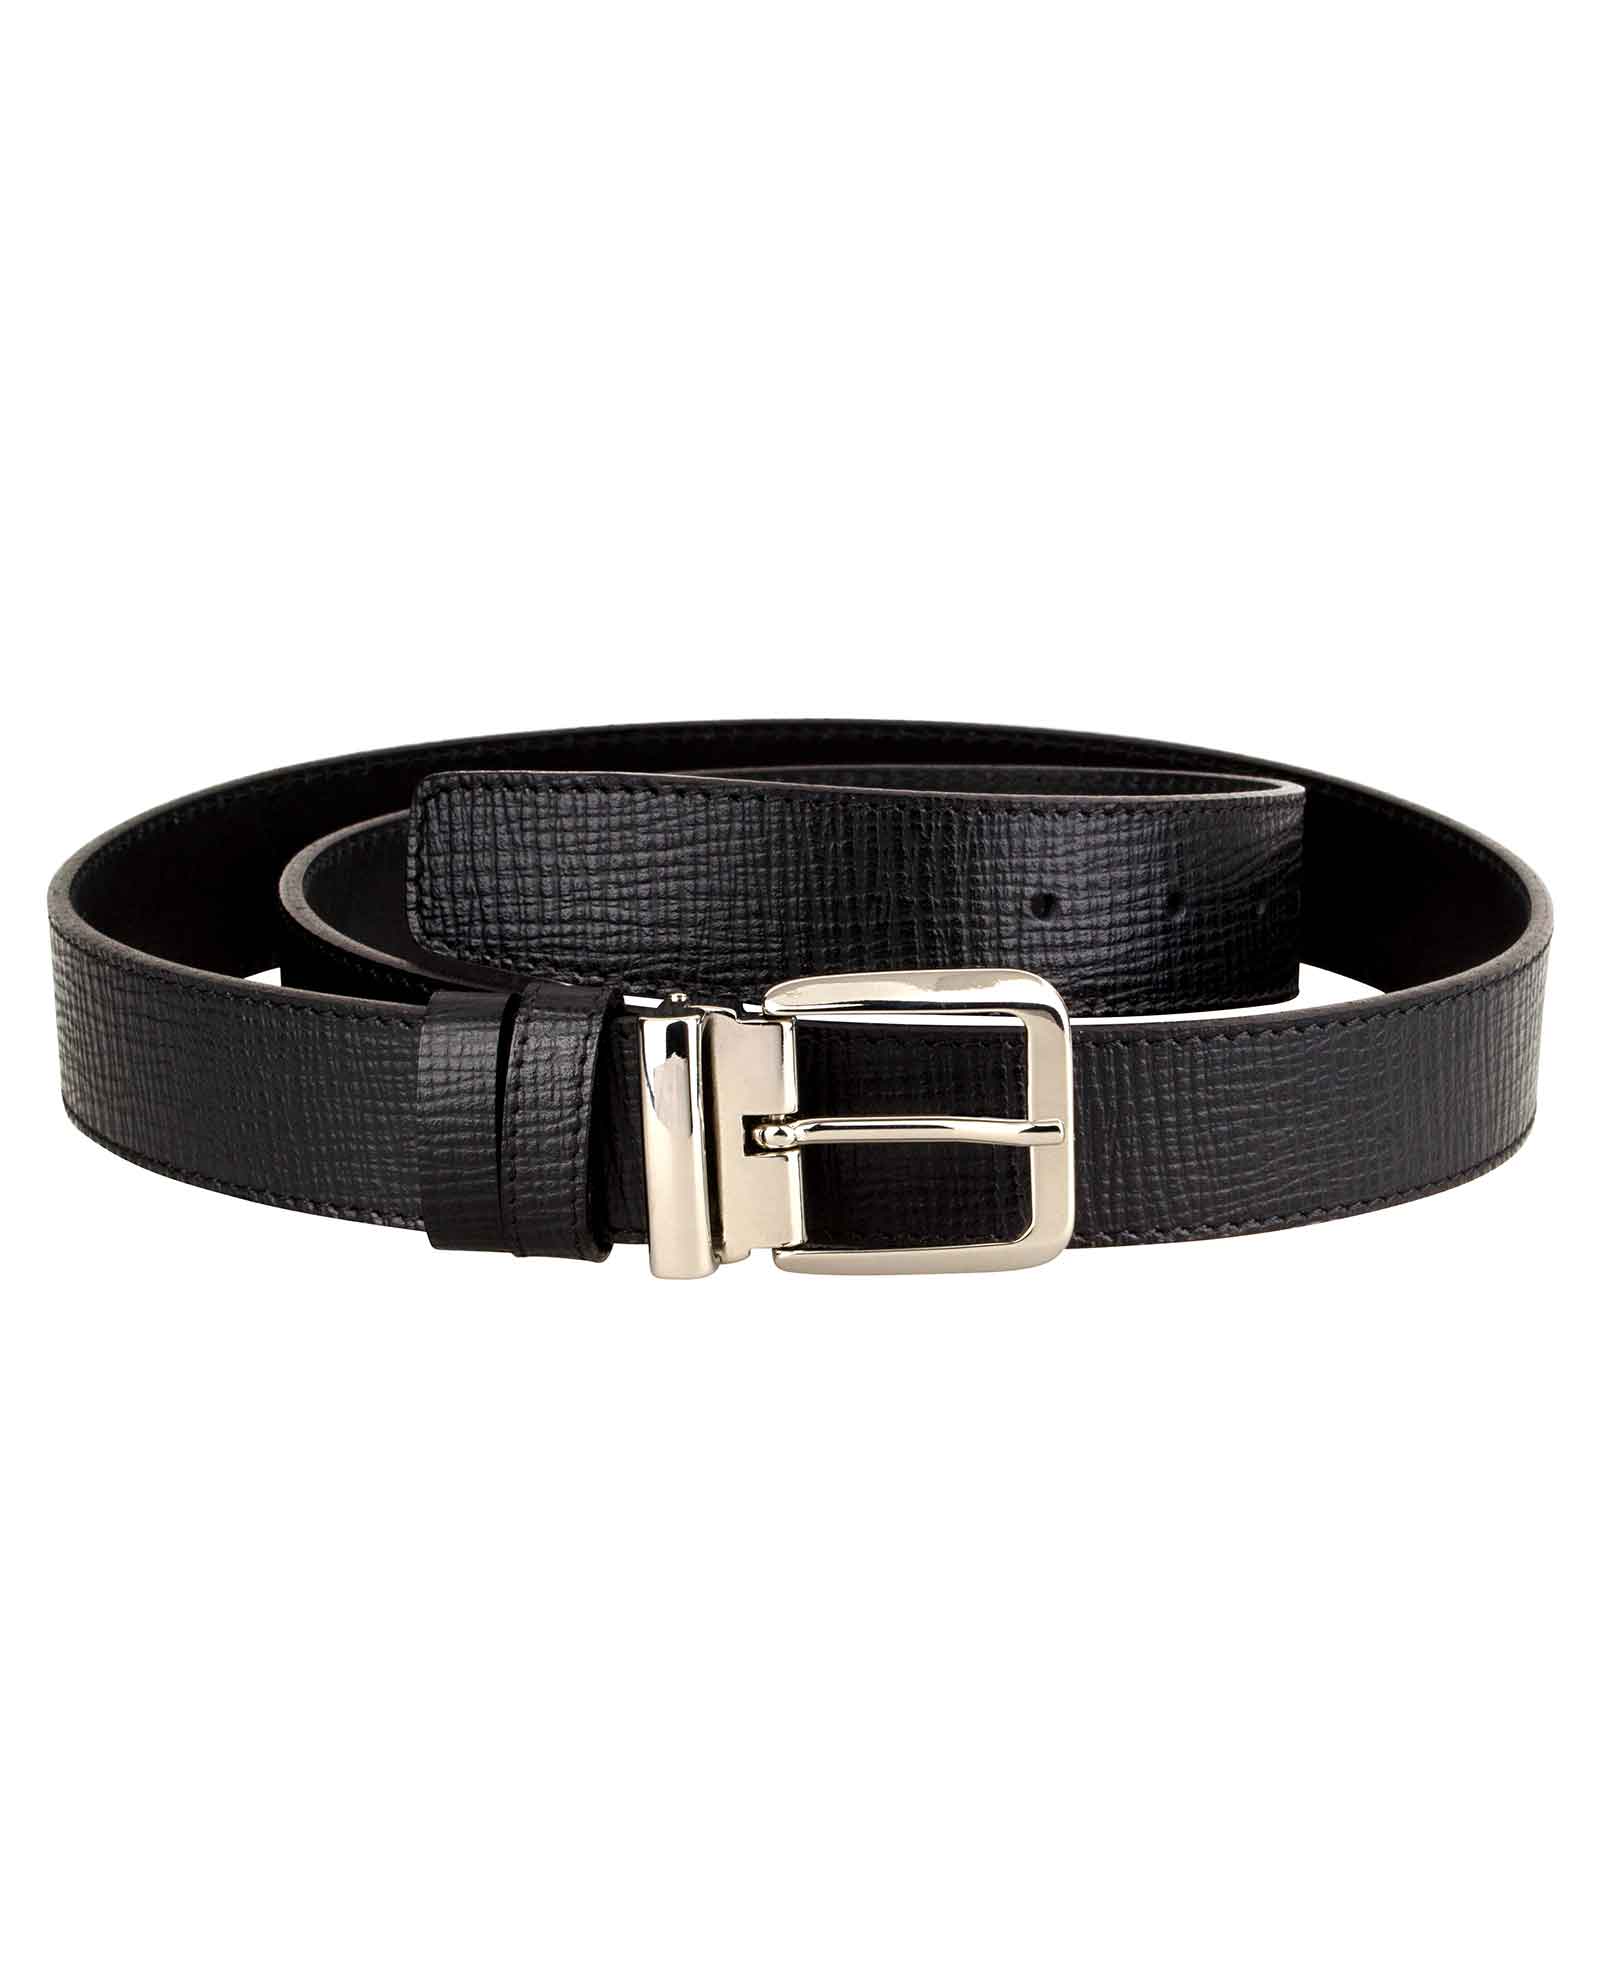 Buy Best Men's Belt - Italian Buckle&Leather - LeatherBeltsOnline.com